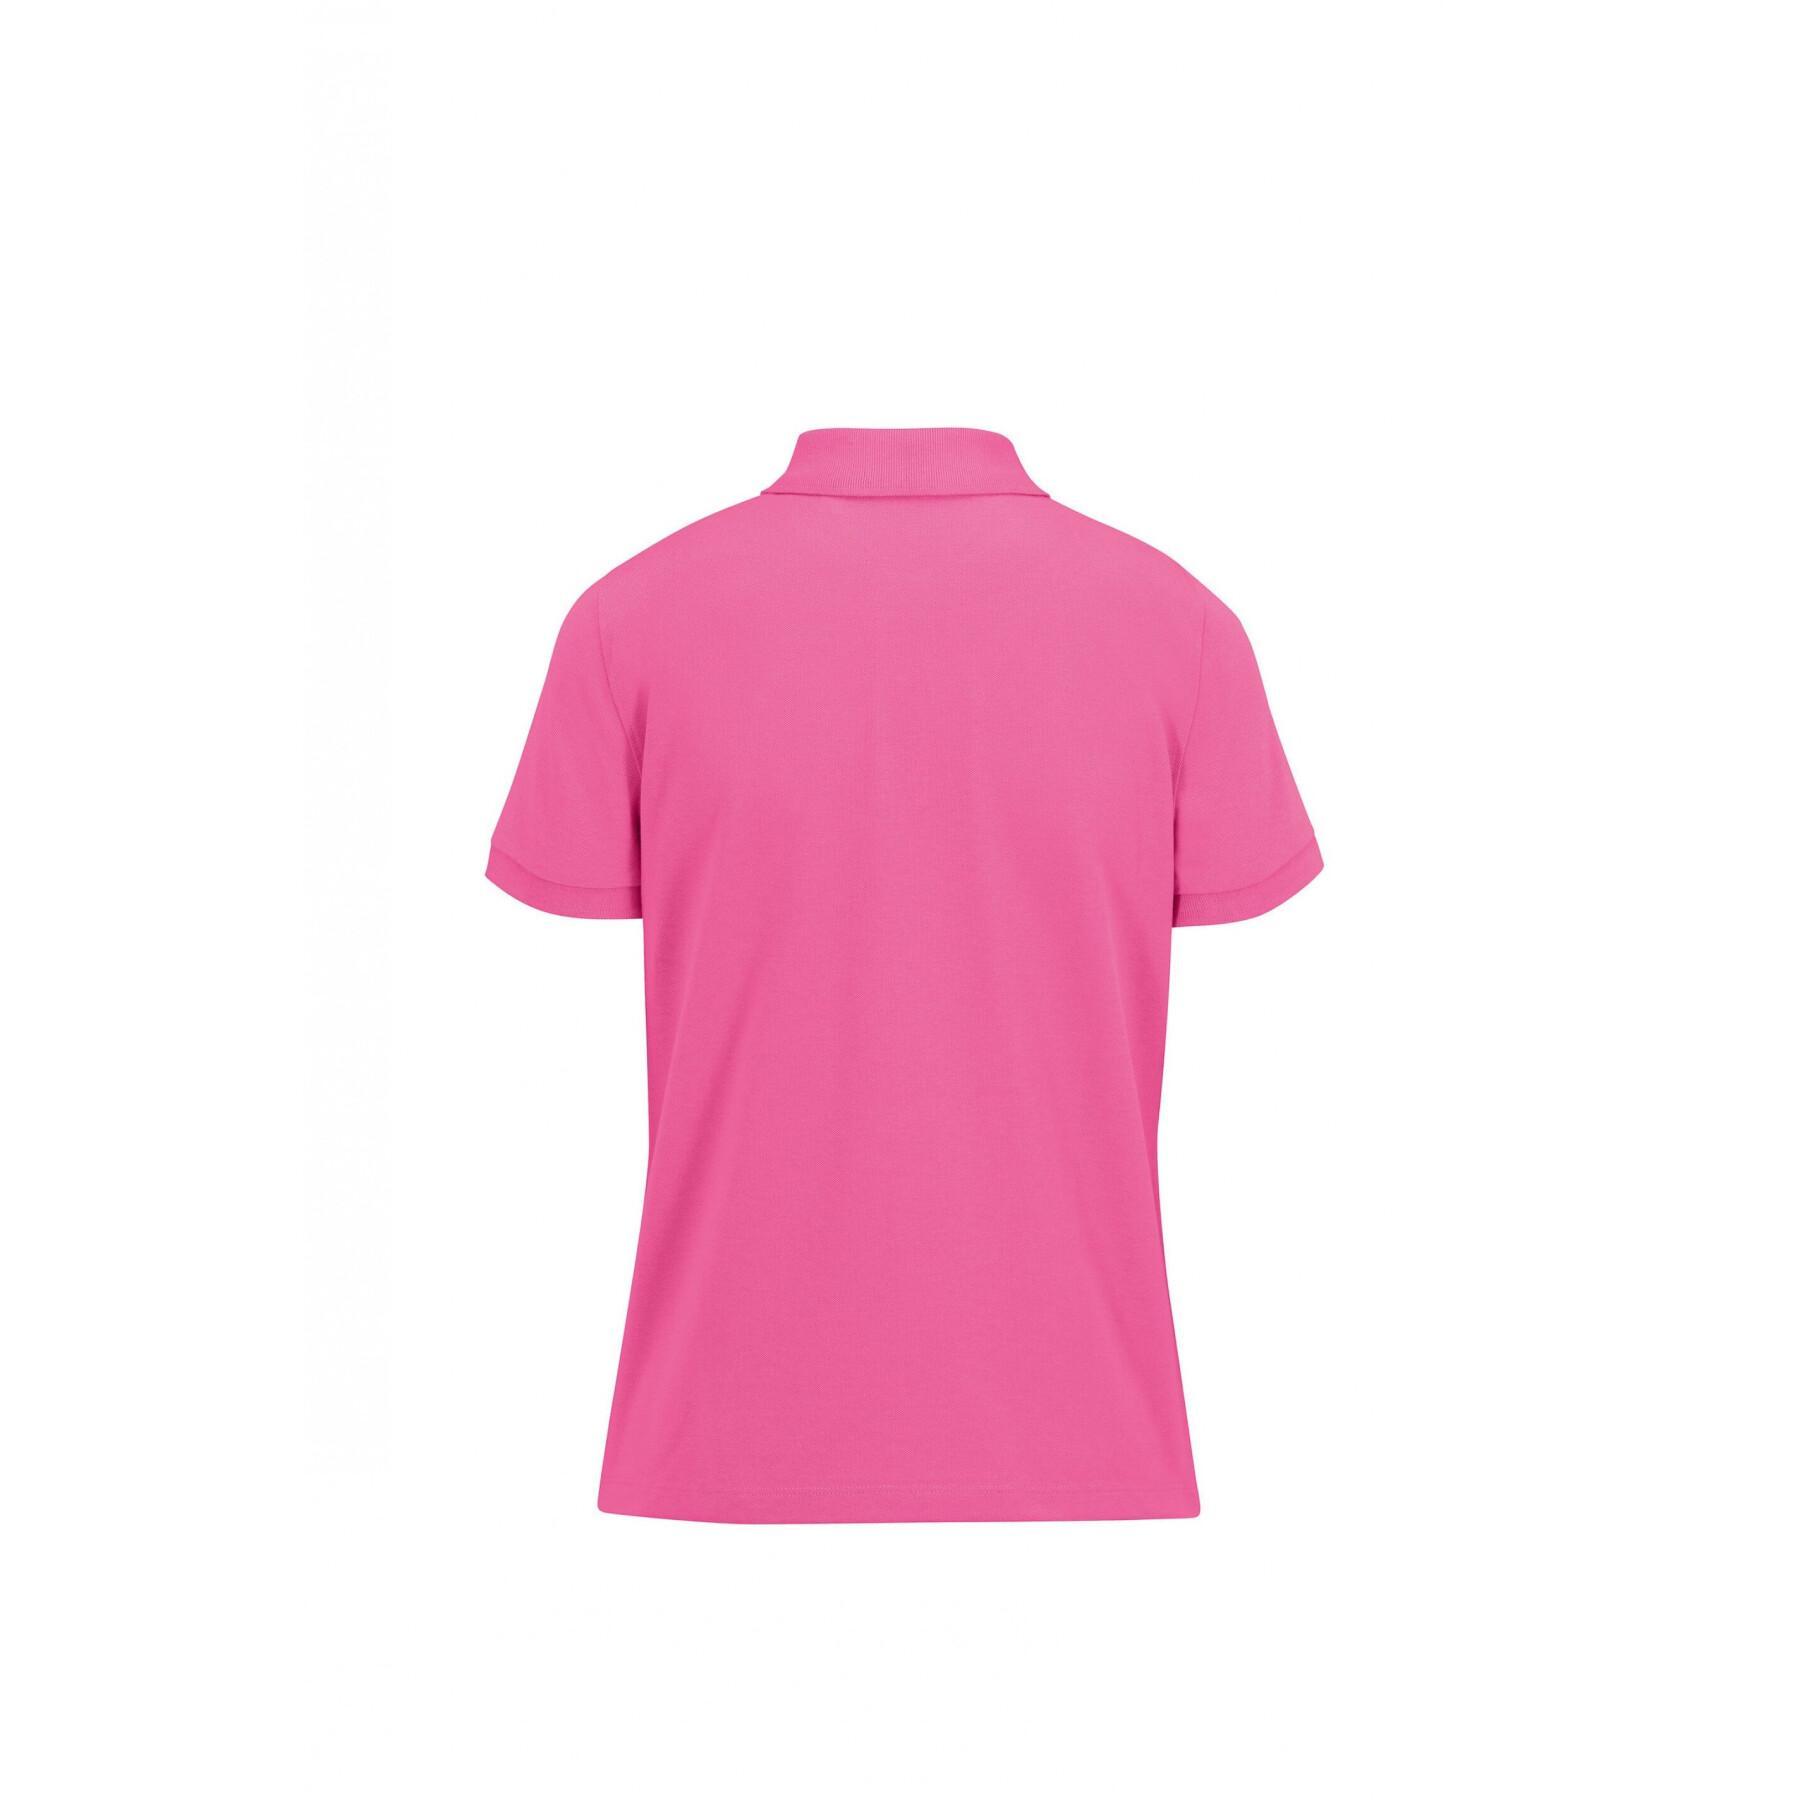 Women's polo shirt B&C Eco 65/35